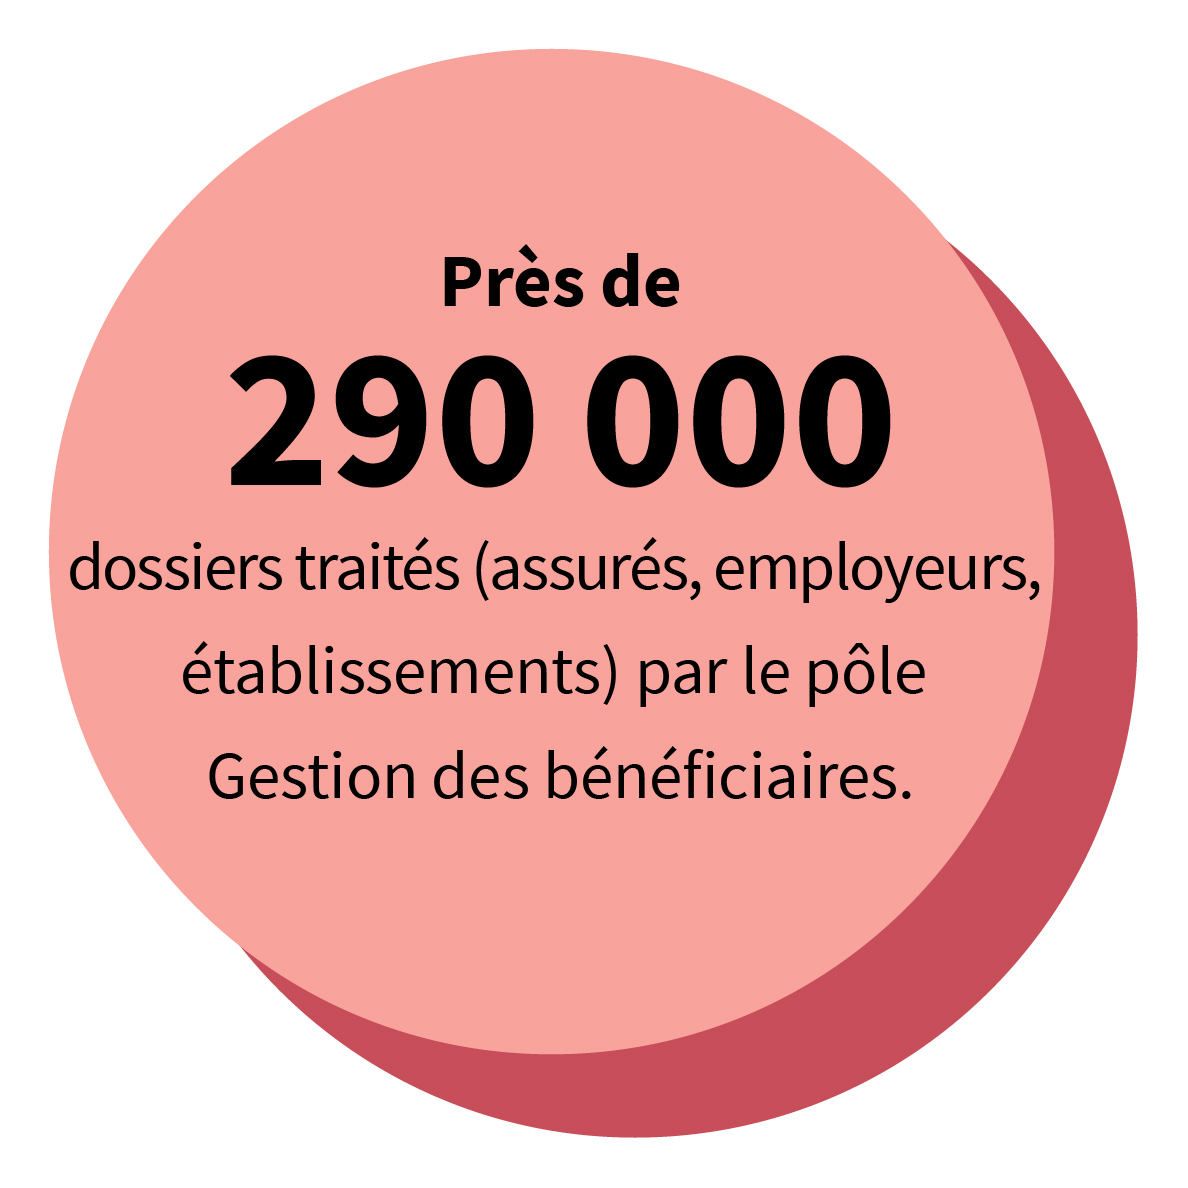 Près de 290 000 dossiers traités (assurés, employeurs, établissements) par le pôle Gestion des bénéficiaires.